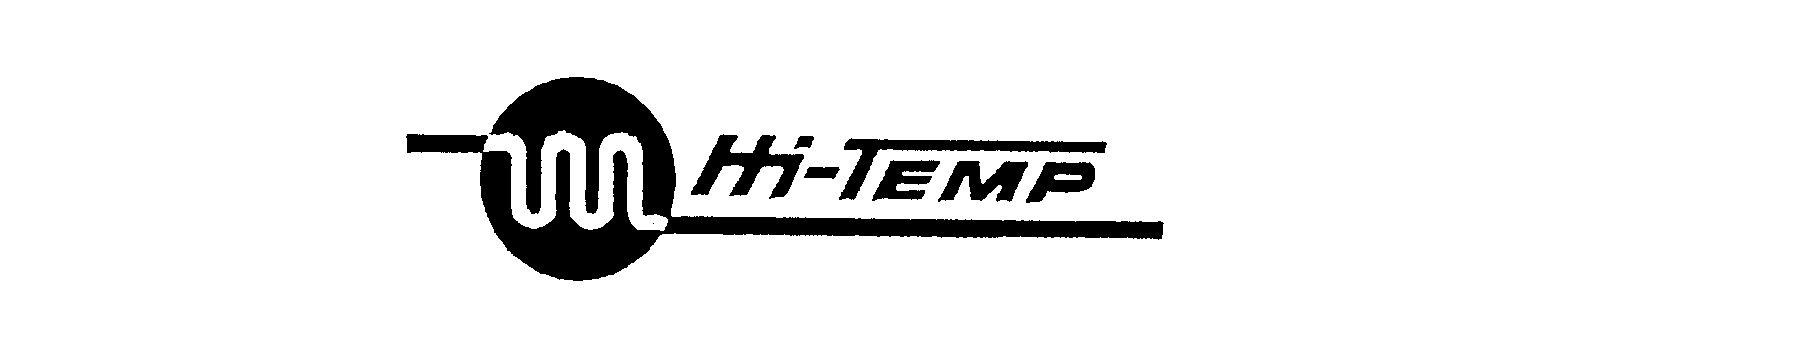 HI-TEMP